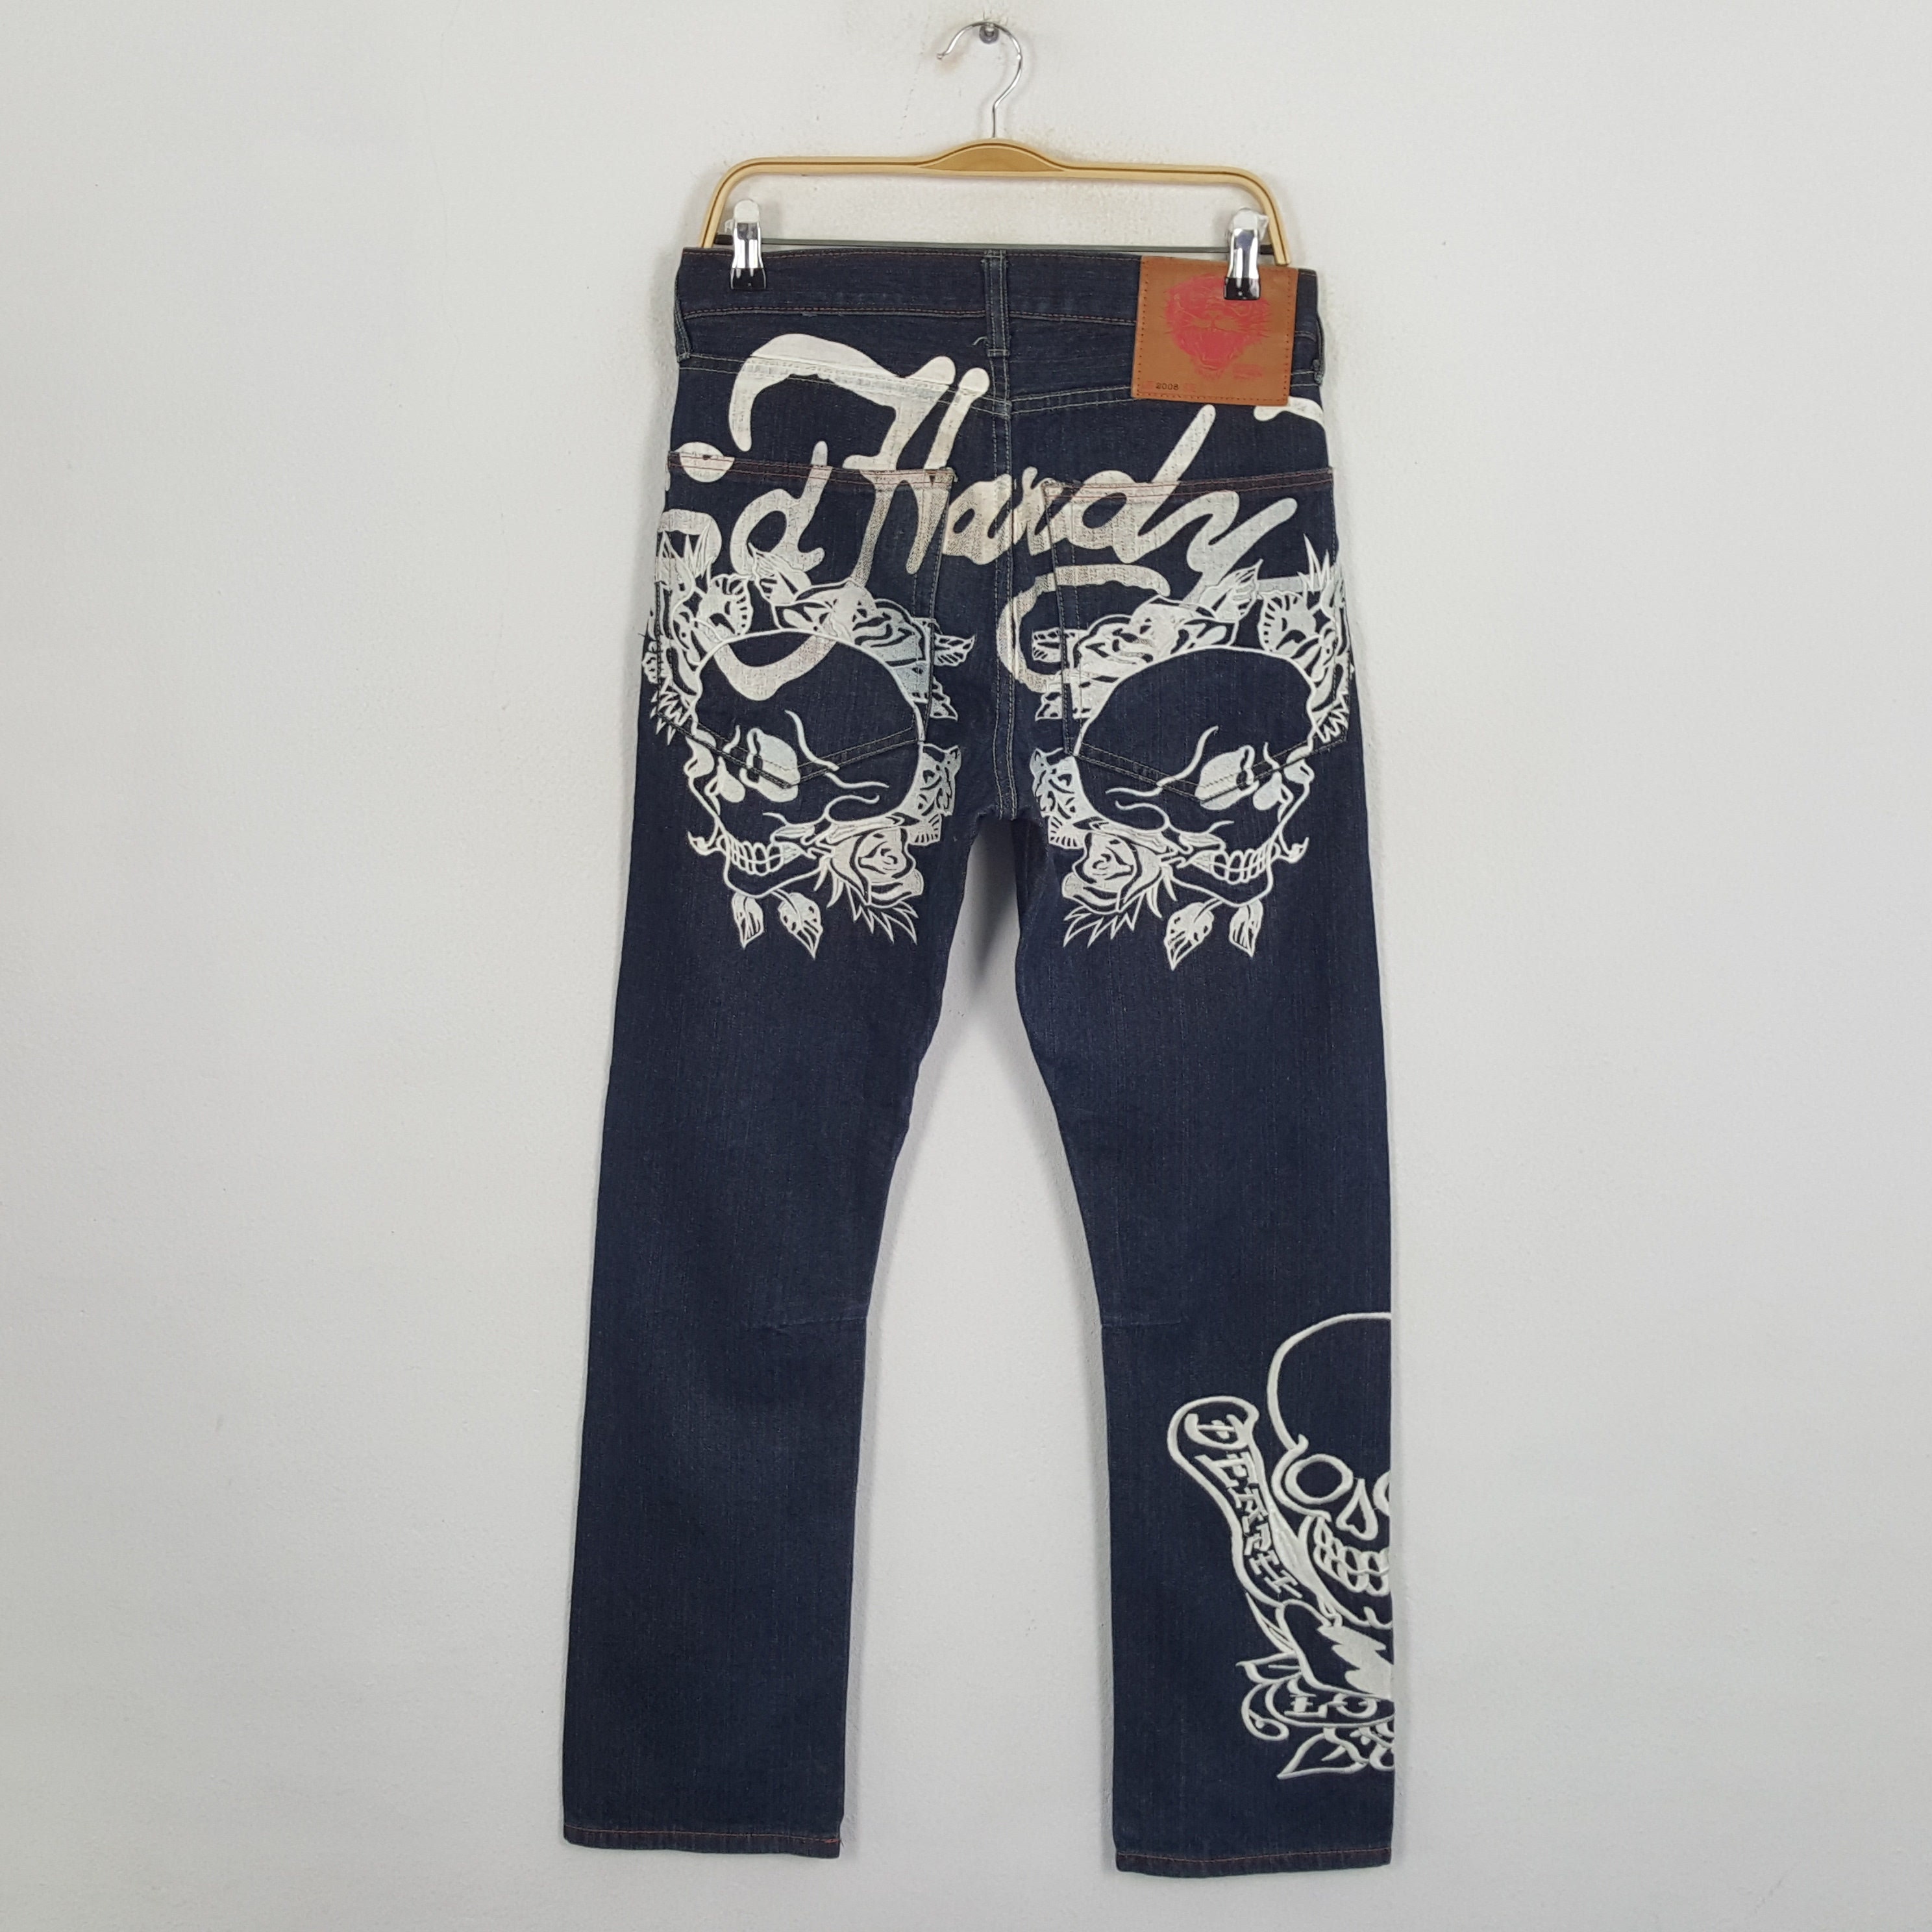 Vintage ED HARDY Streewear Skateboard Style Jeans